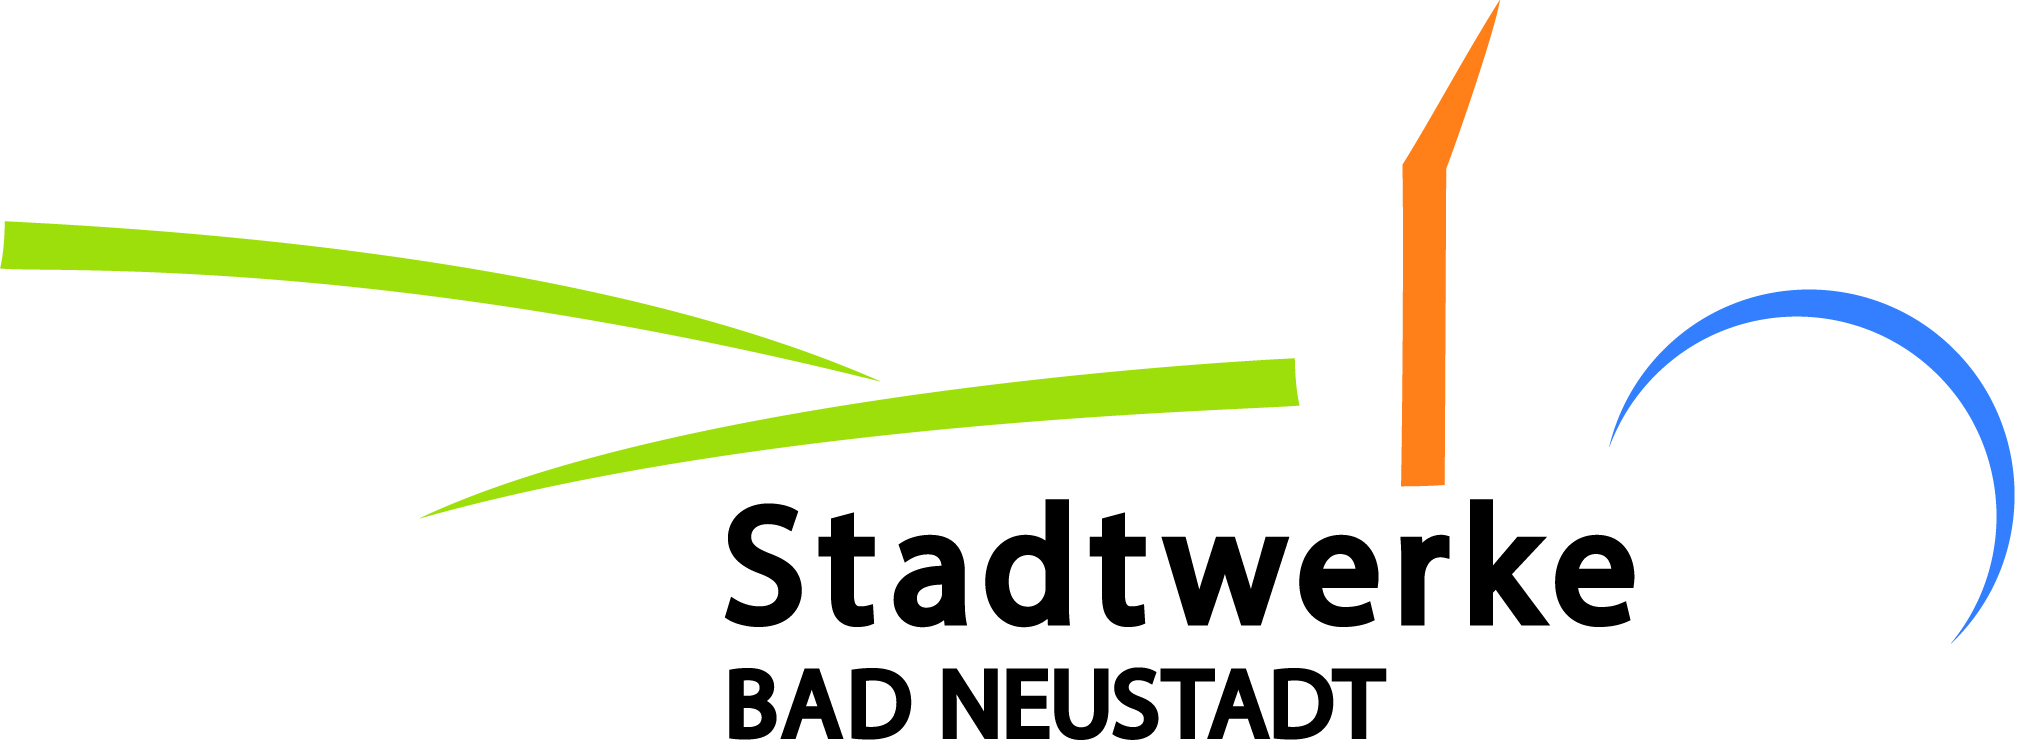 Stadtwerke Bad Neustadt